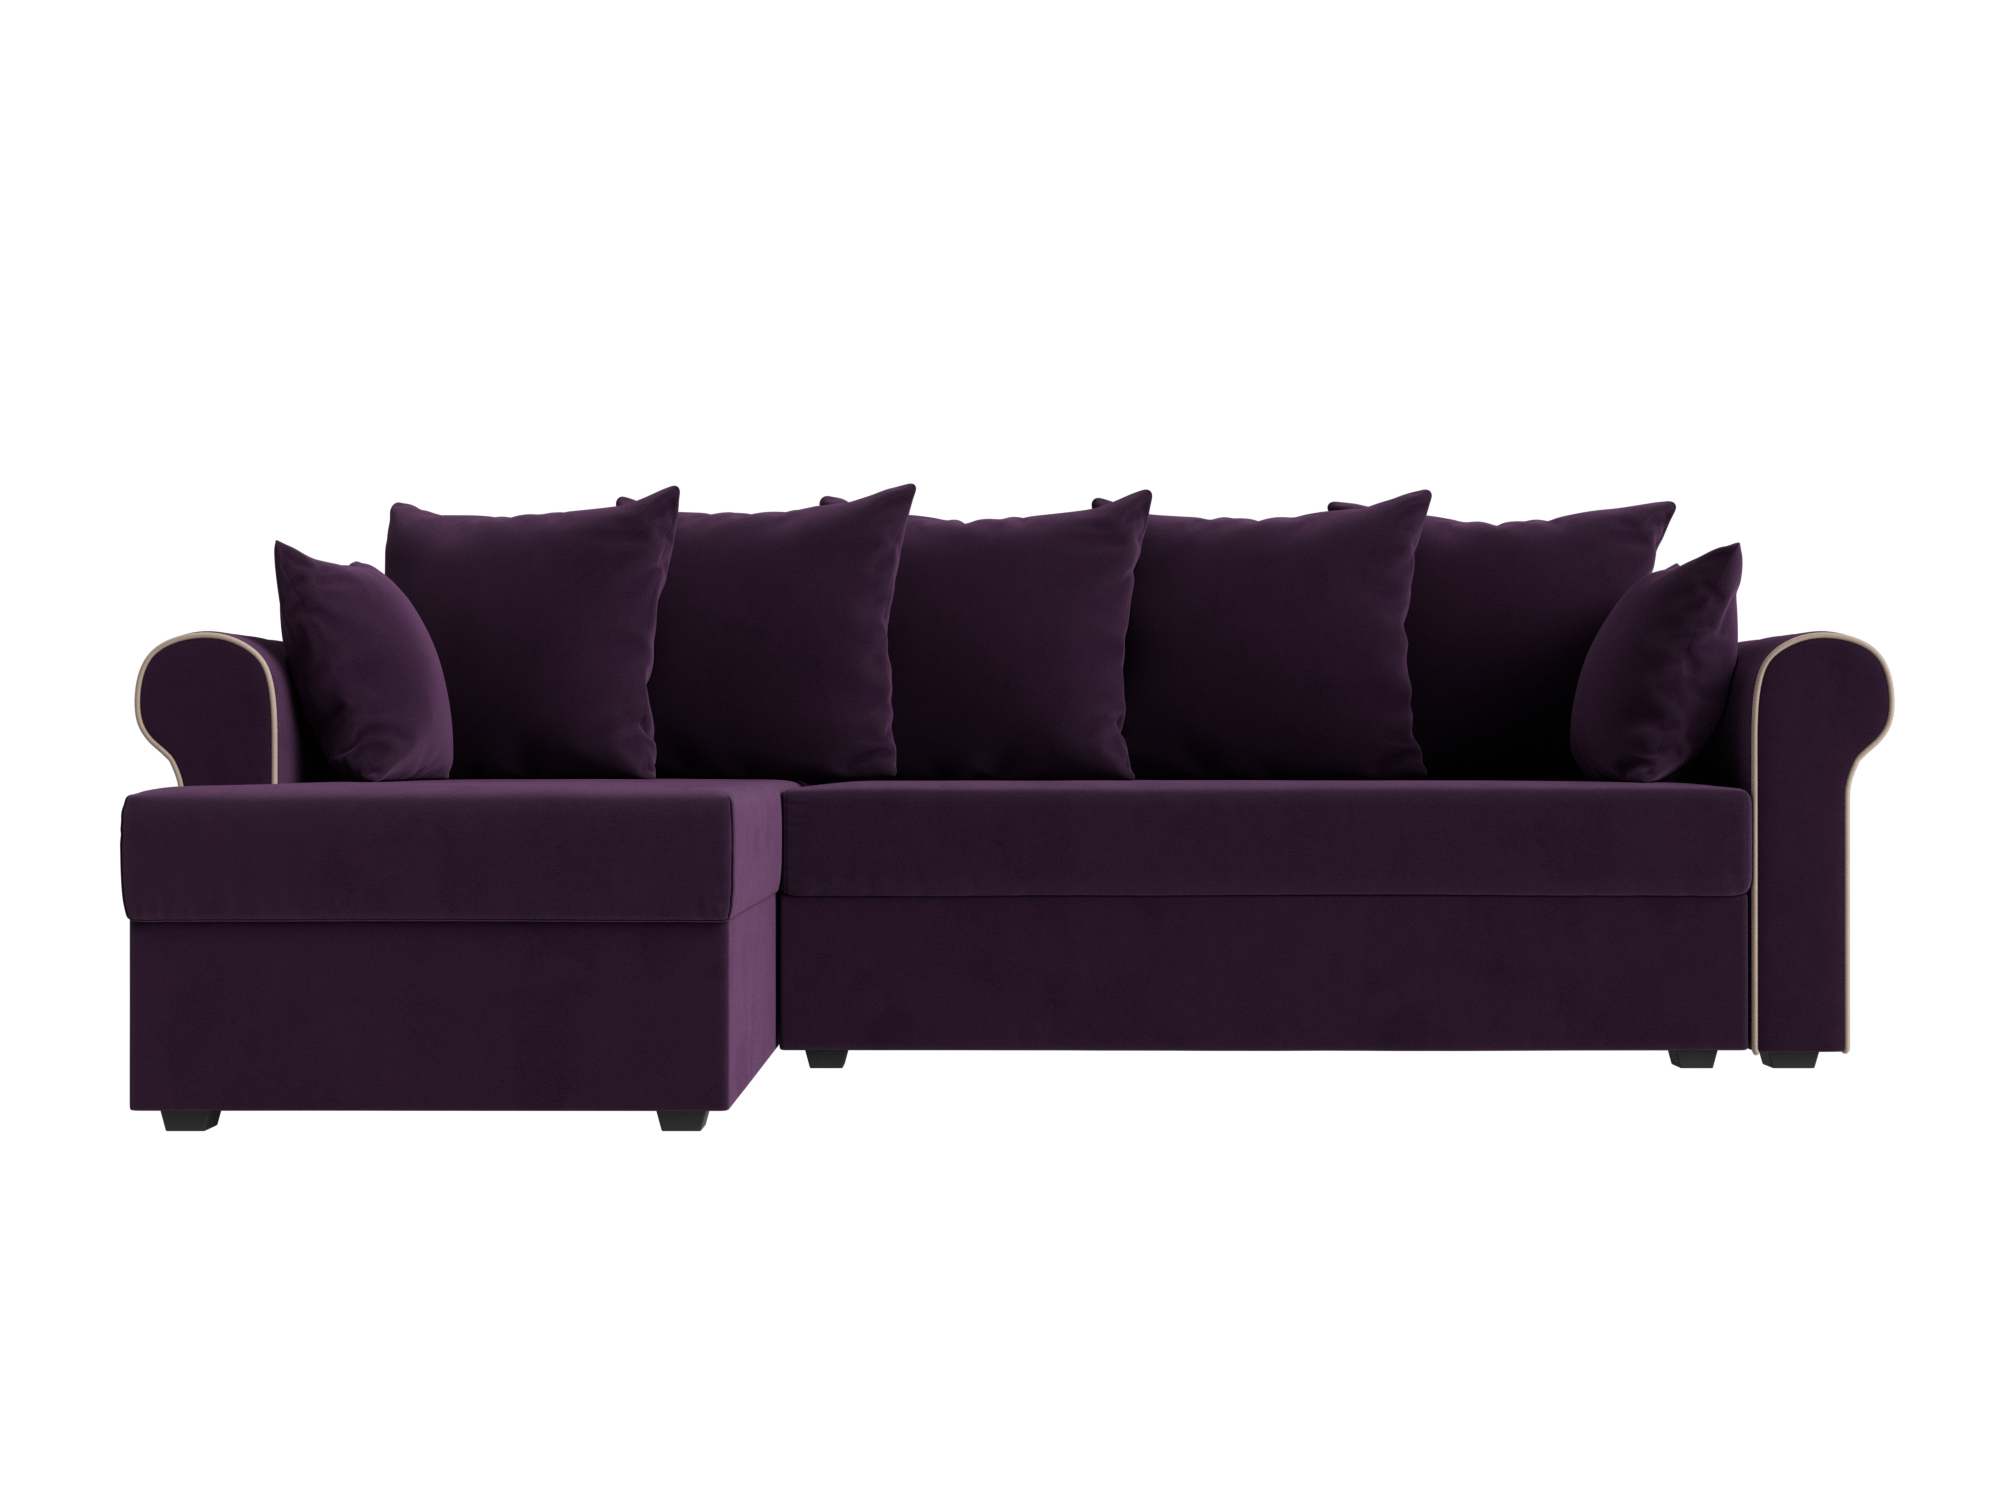 Угловой диван Рейн велюр фиолетовый кант бежевый угол левый